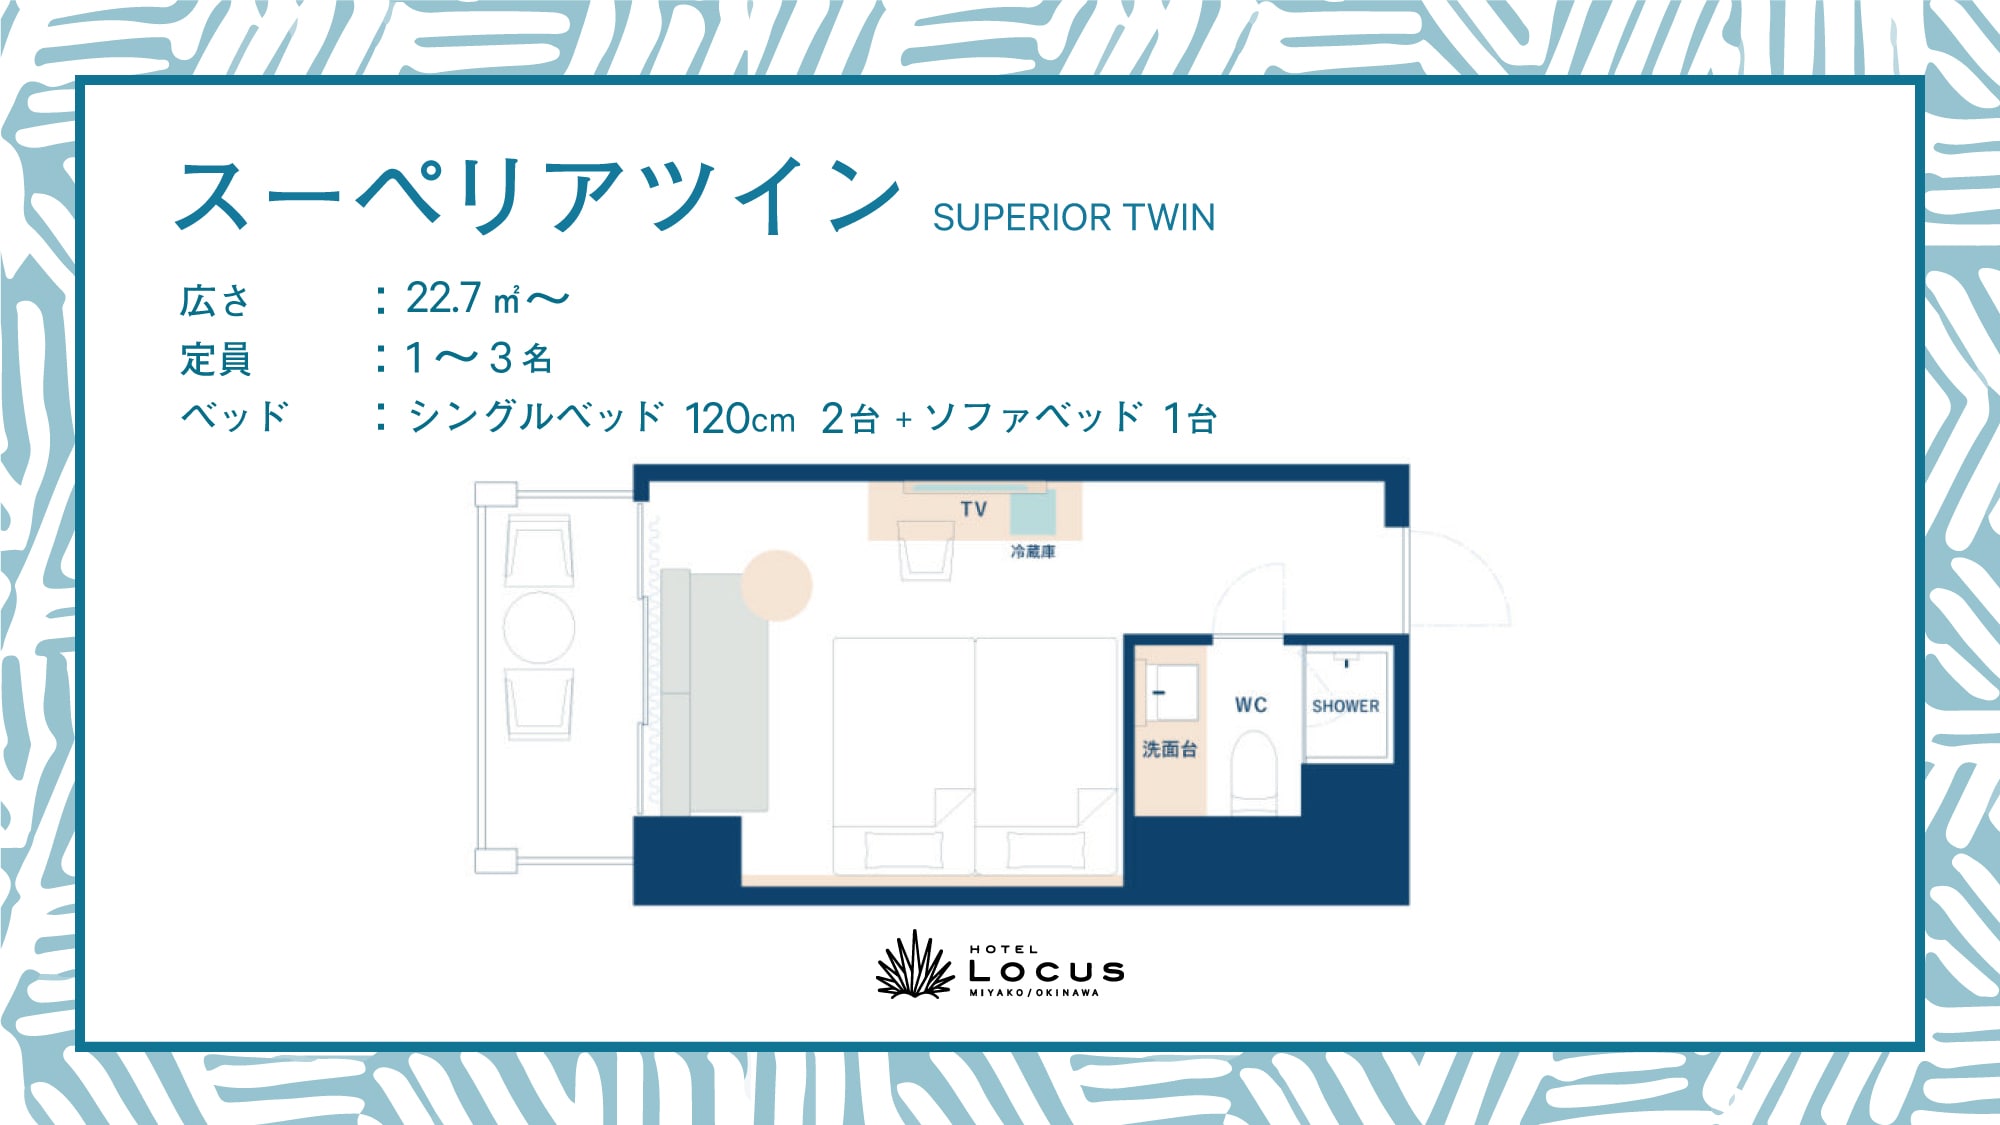 ◆ Superior Twin